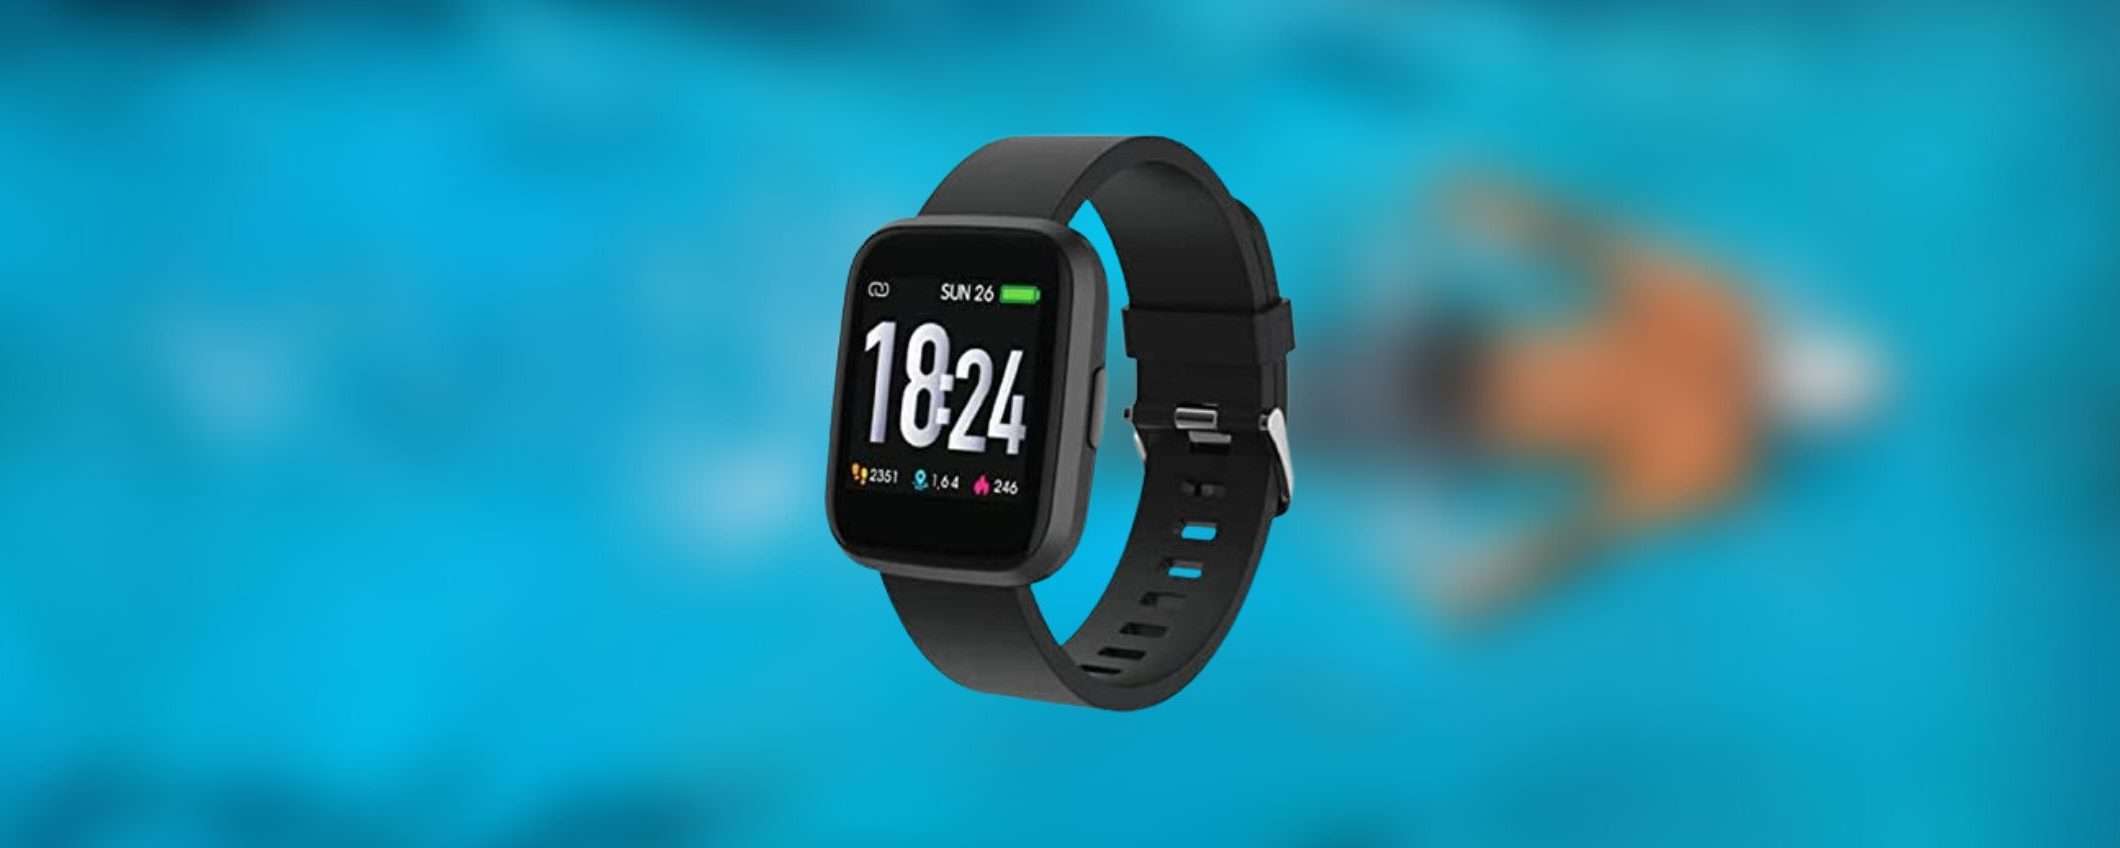 Amazon: offerta clamorosa su questo smartwatch sportivo (-72%)